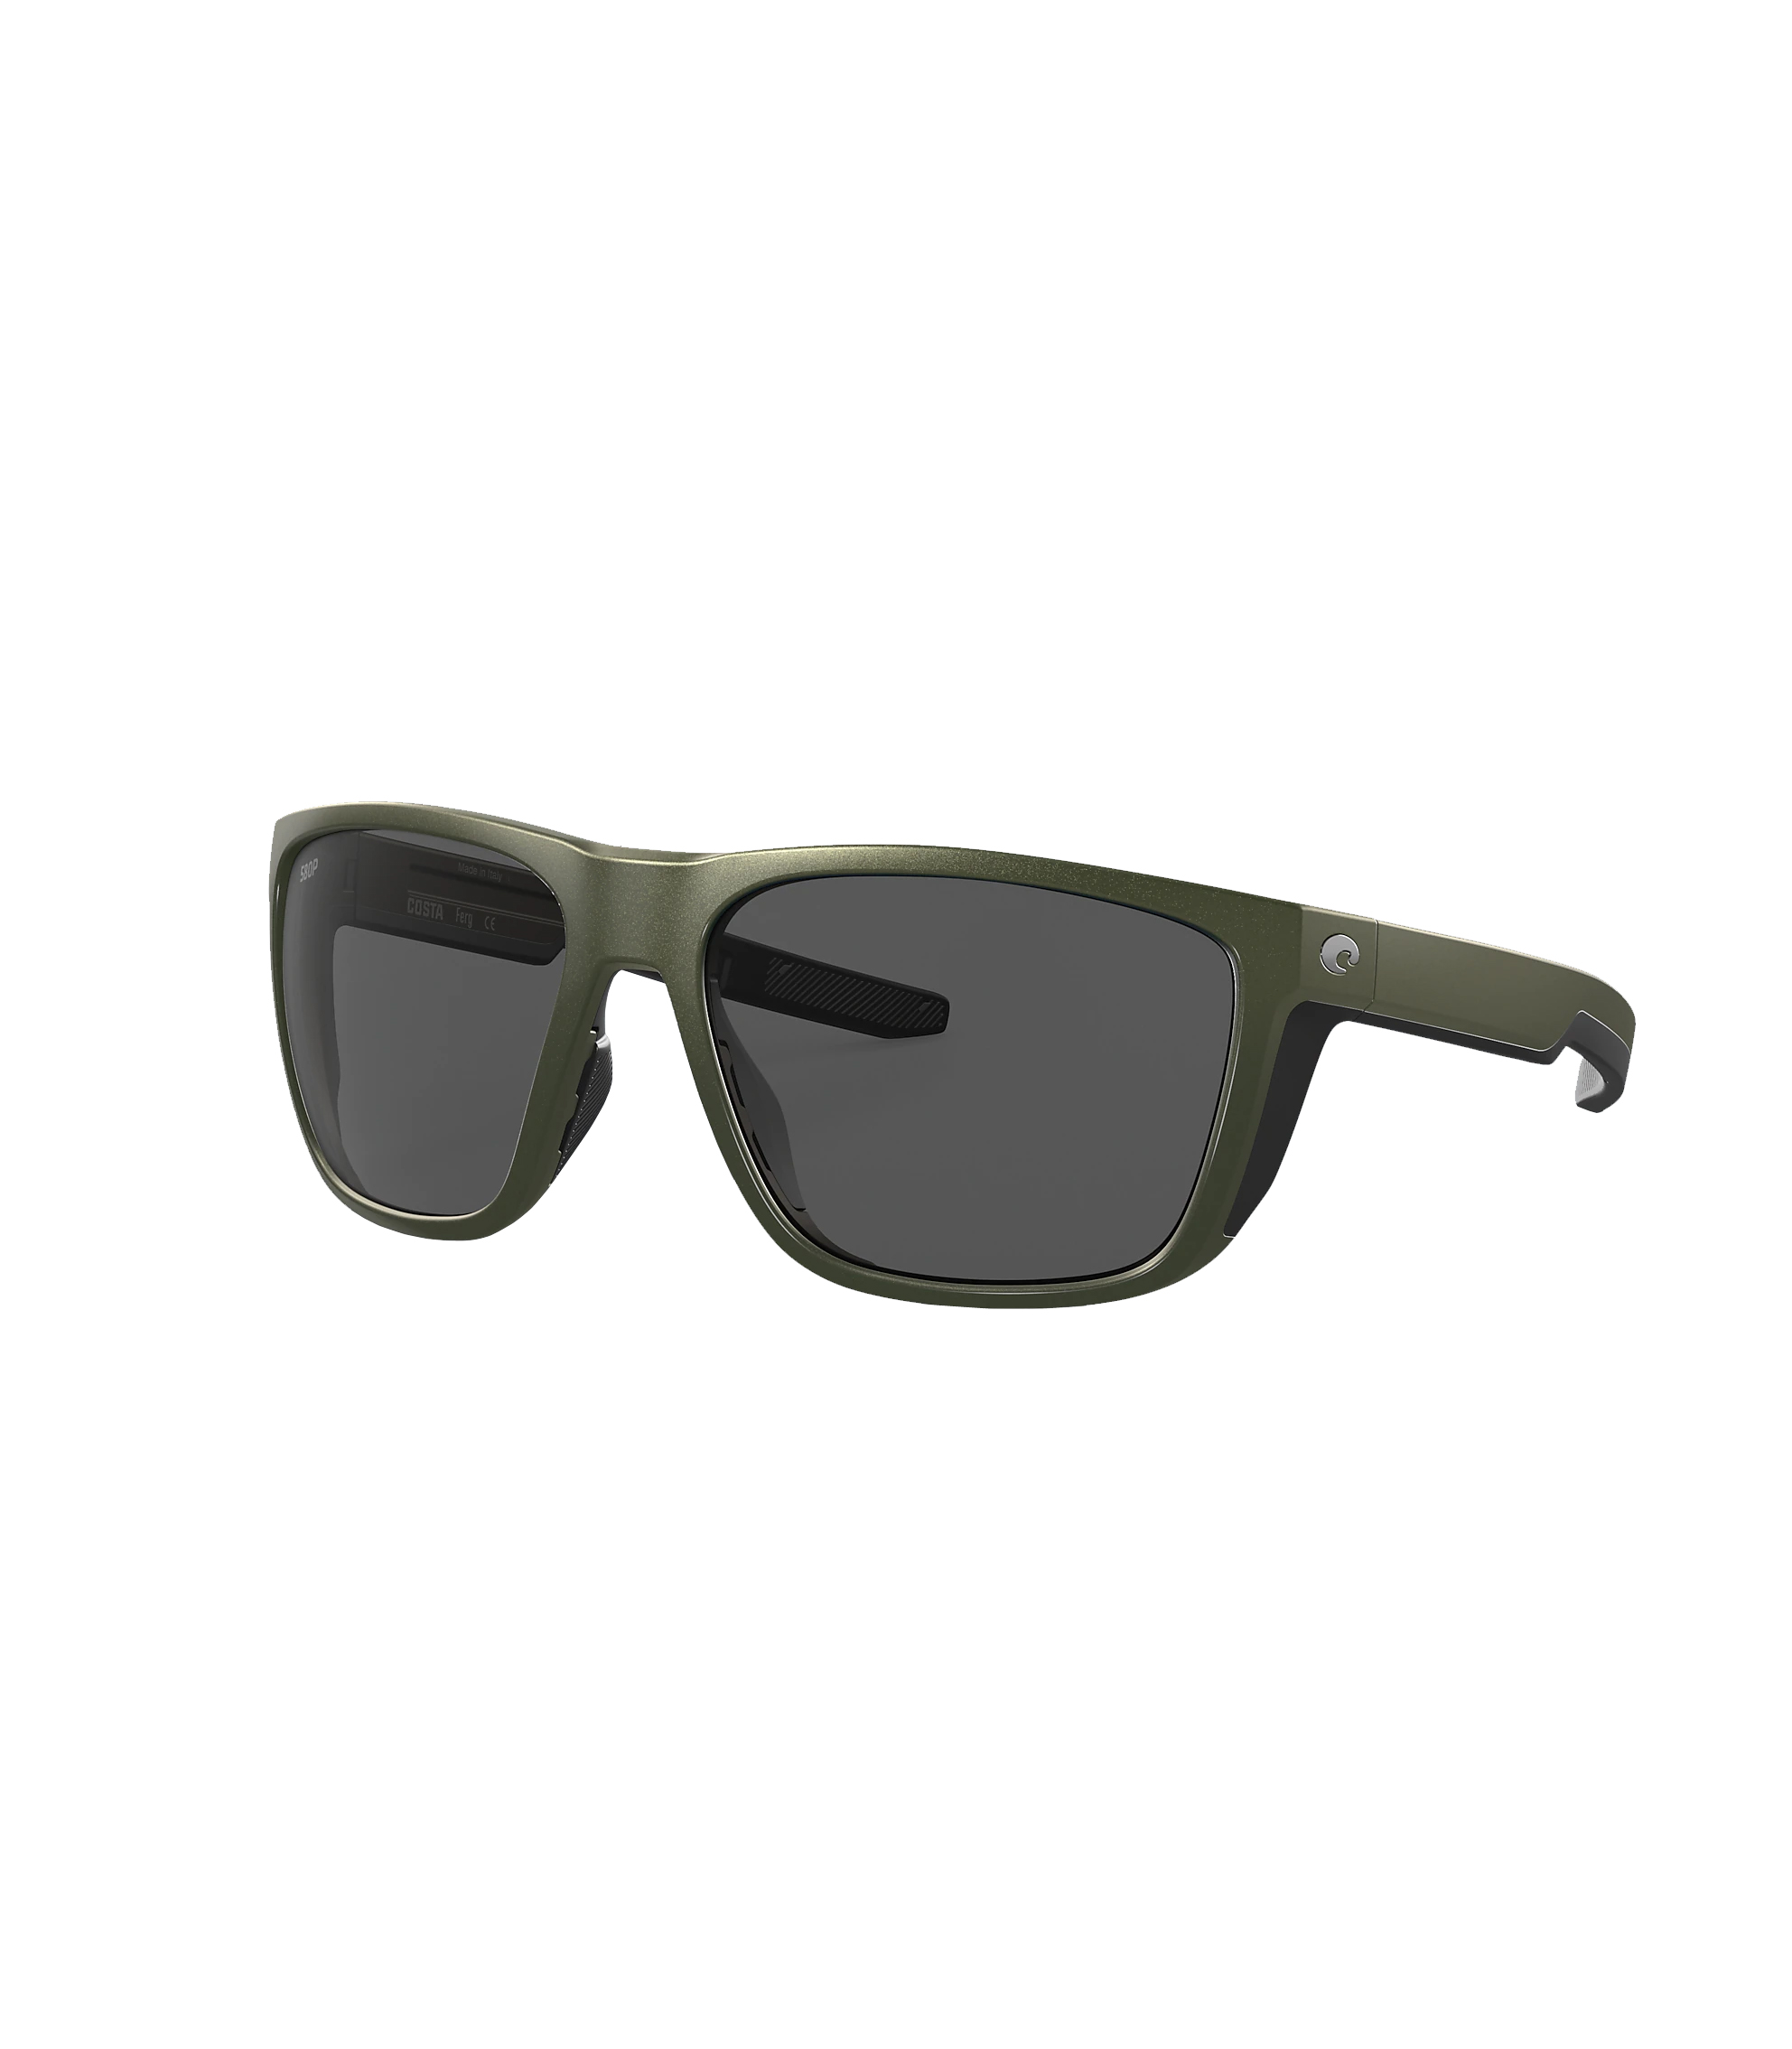 Pre-owned Costa Del Mar Ferg Polarized Sunglasses In Mossmtallic